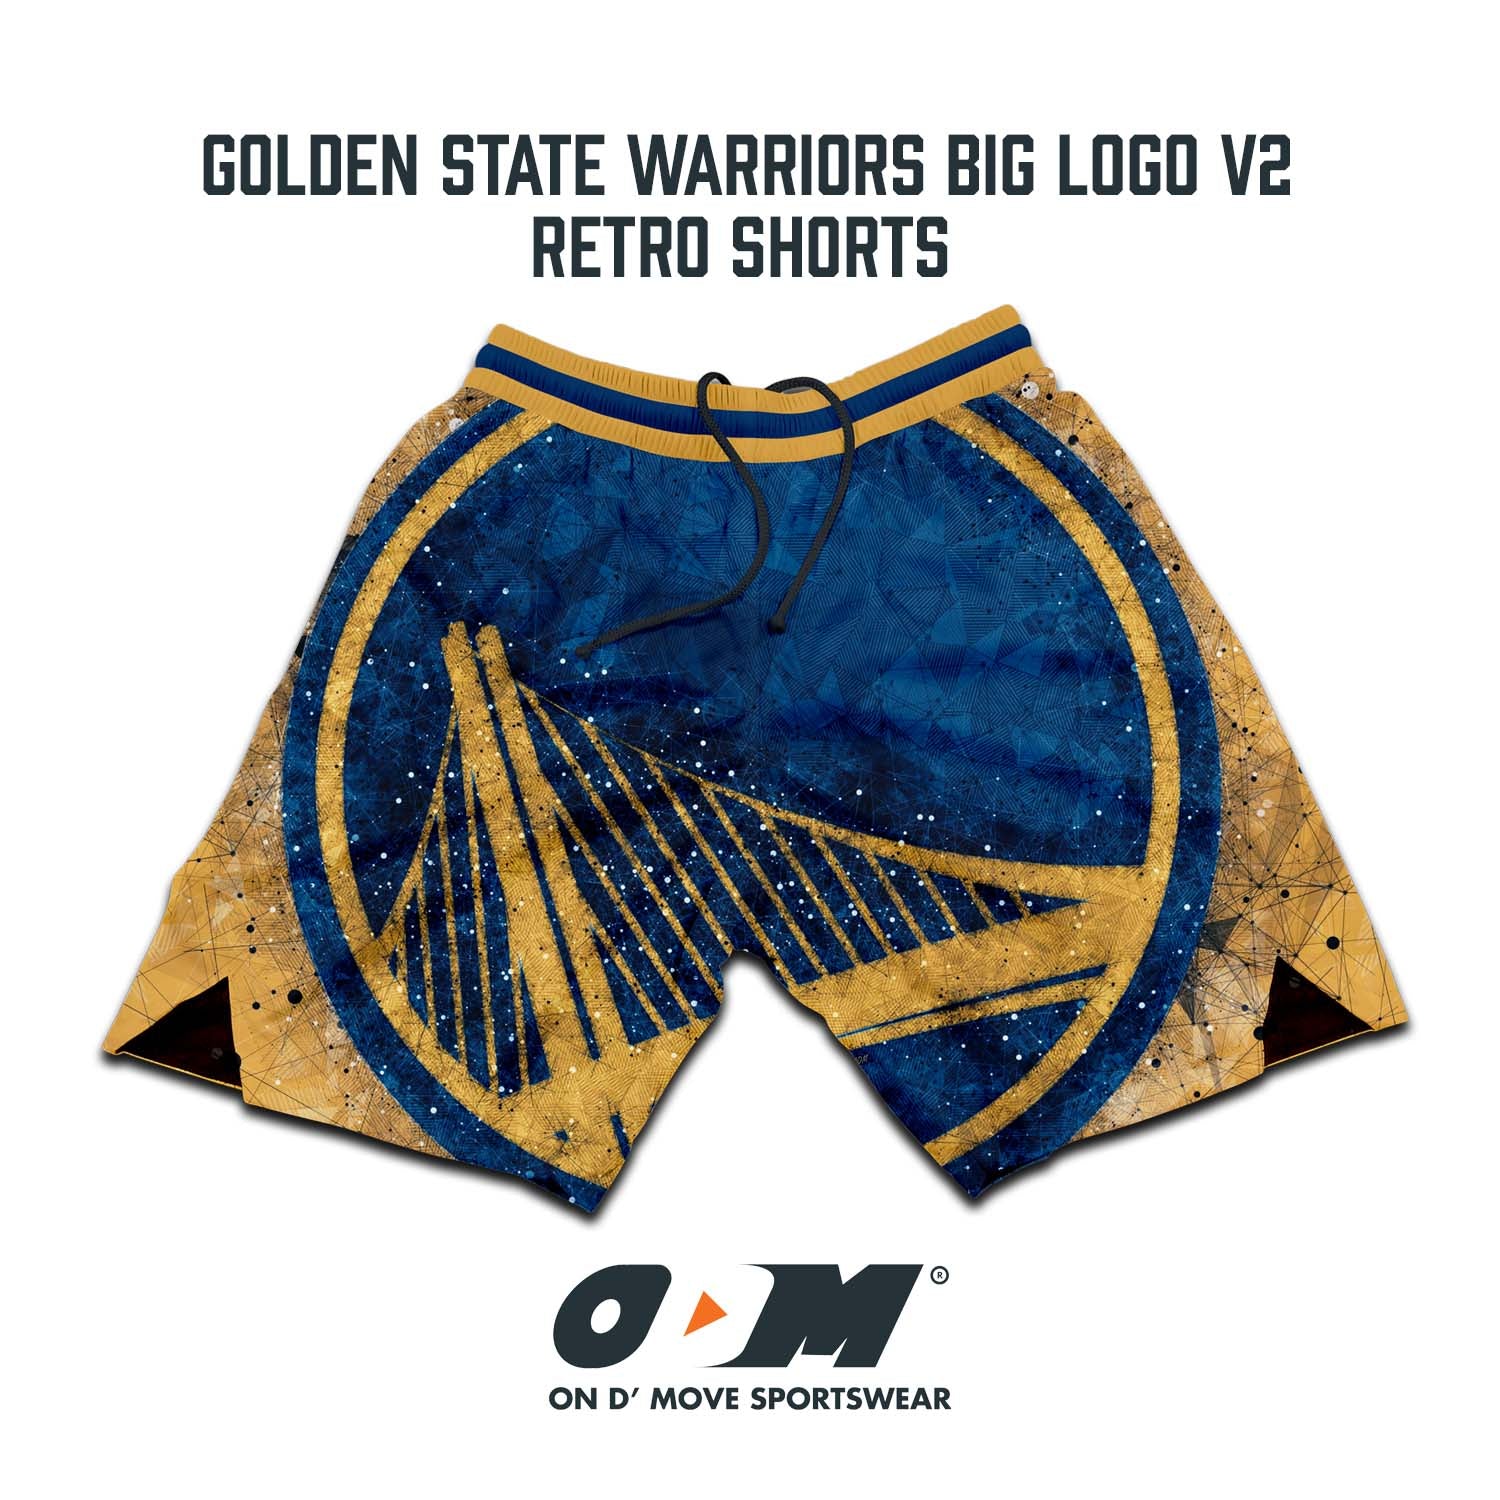 Golden State Warriors Big Logo v2 Retro Shorts